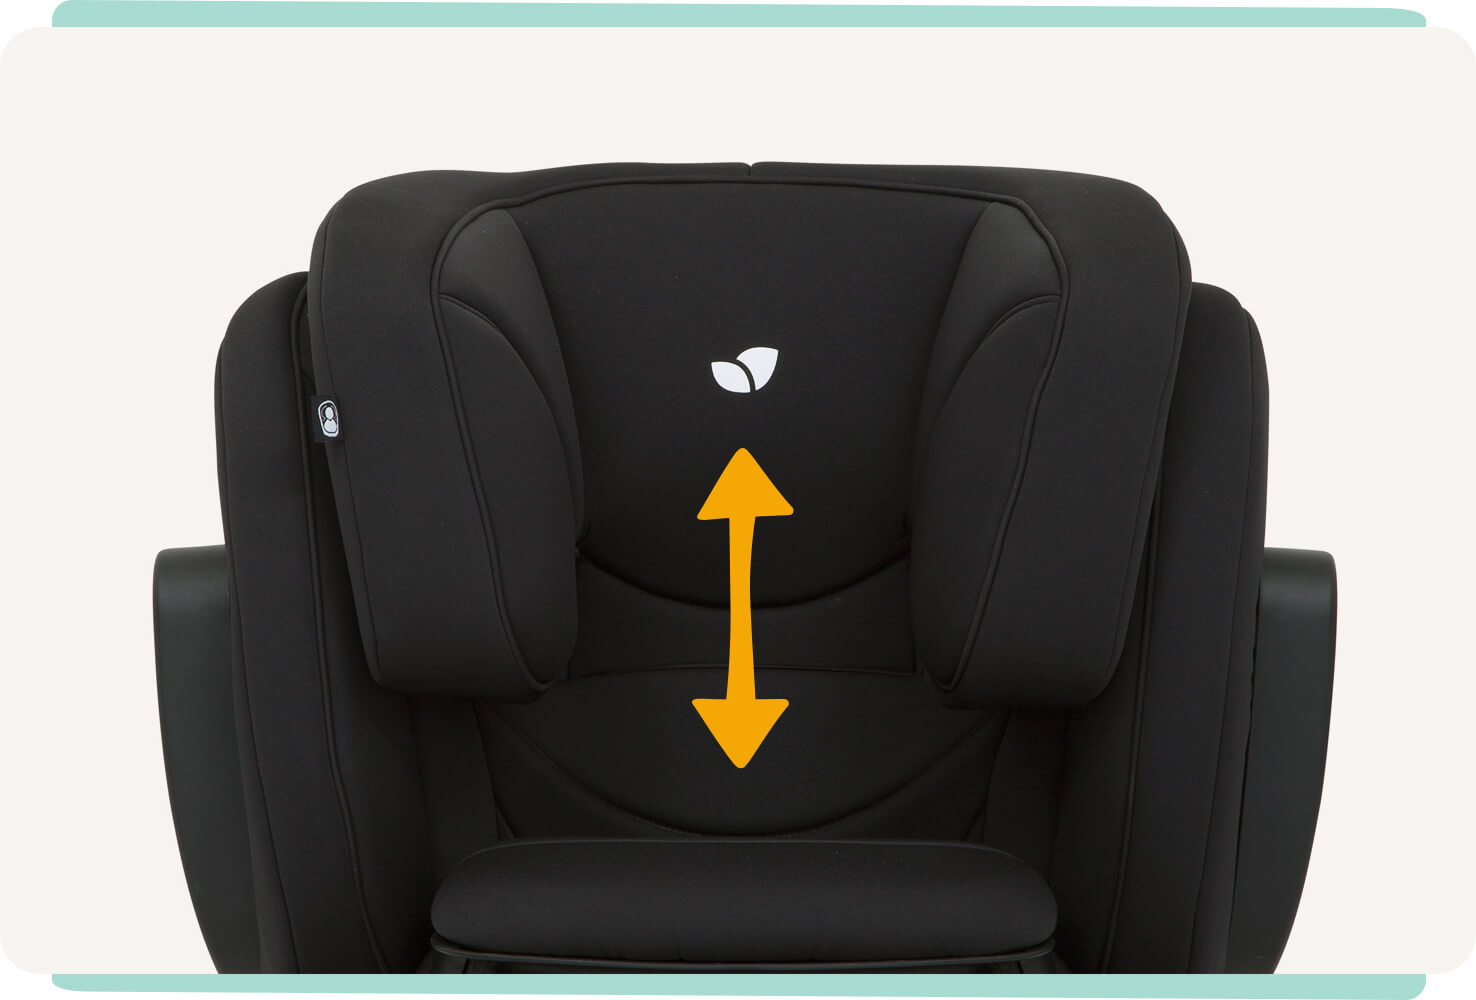  Vue en zoom de la têtière du rehausseur de siège auto Joie traver avec une flèche orange indiquant le mouvement de la têtière. 